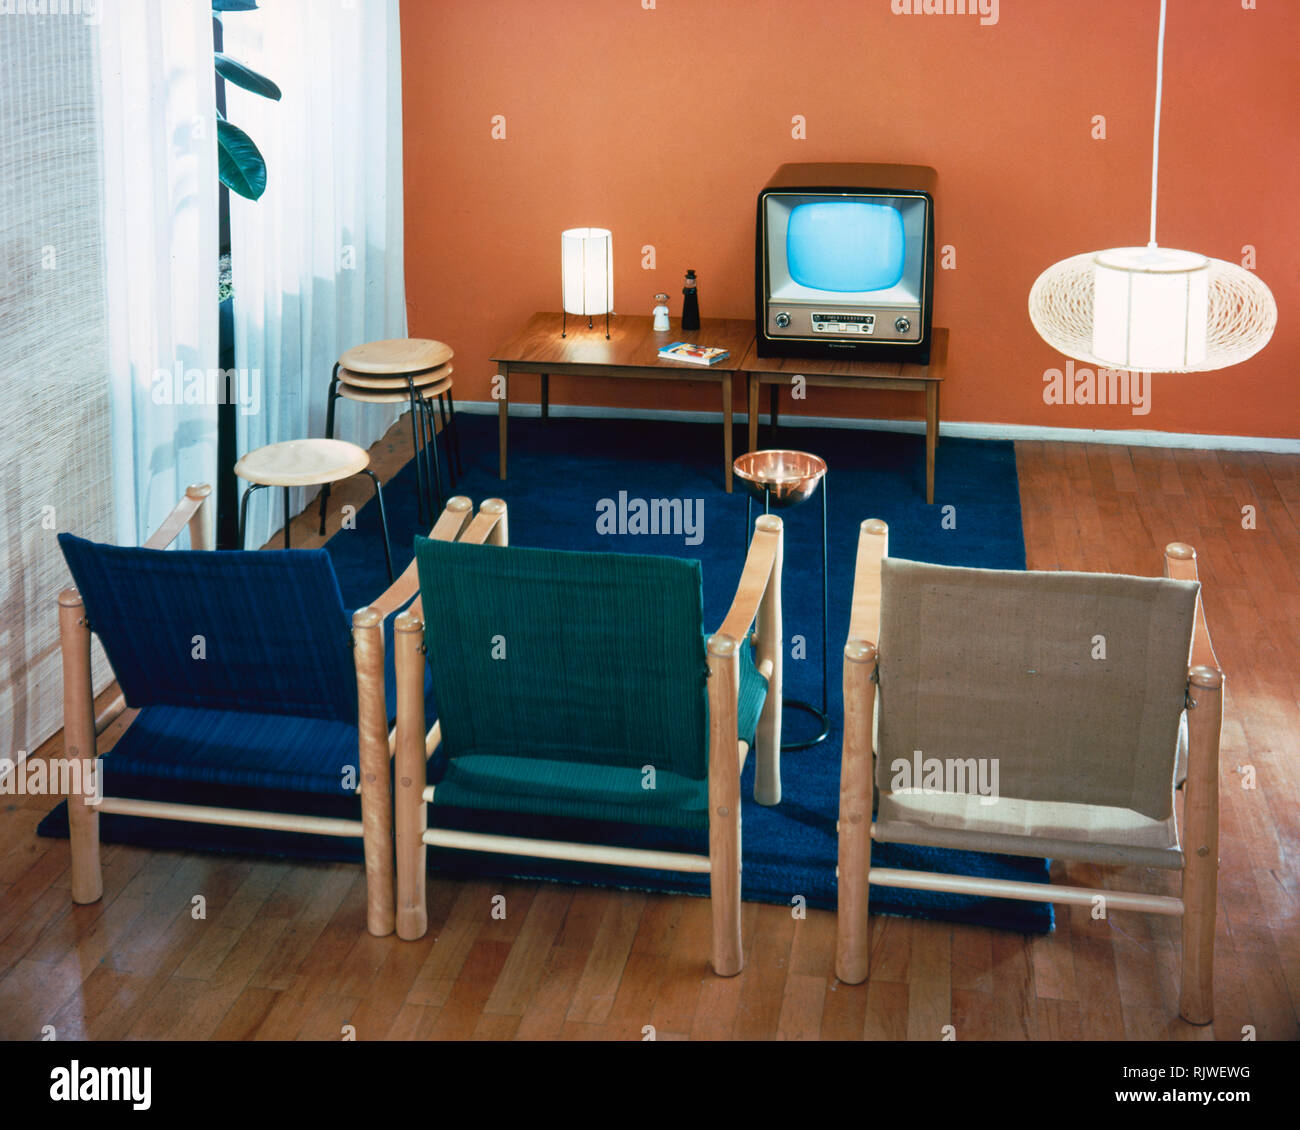 Fernsehen in den 1950er Jahren. Innenausstattung aus einem Zimmer mit drei Stühlen vor einem typischen 50er Fernseher eingerichtet. Bei der Ausstattung Zimmer im neuen TV-Alter in den späten 1950er Jahren, der Fernseher war häufig im Fokus. Neue Möbel wie die TV-Bank wurde gesehen. ref BV 98-4 Schweden 1958 Stockfoto